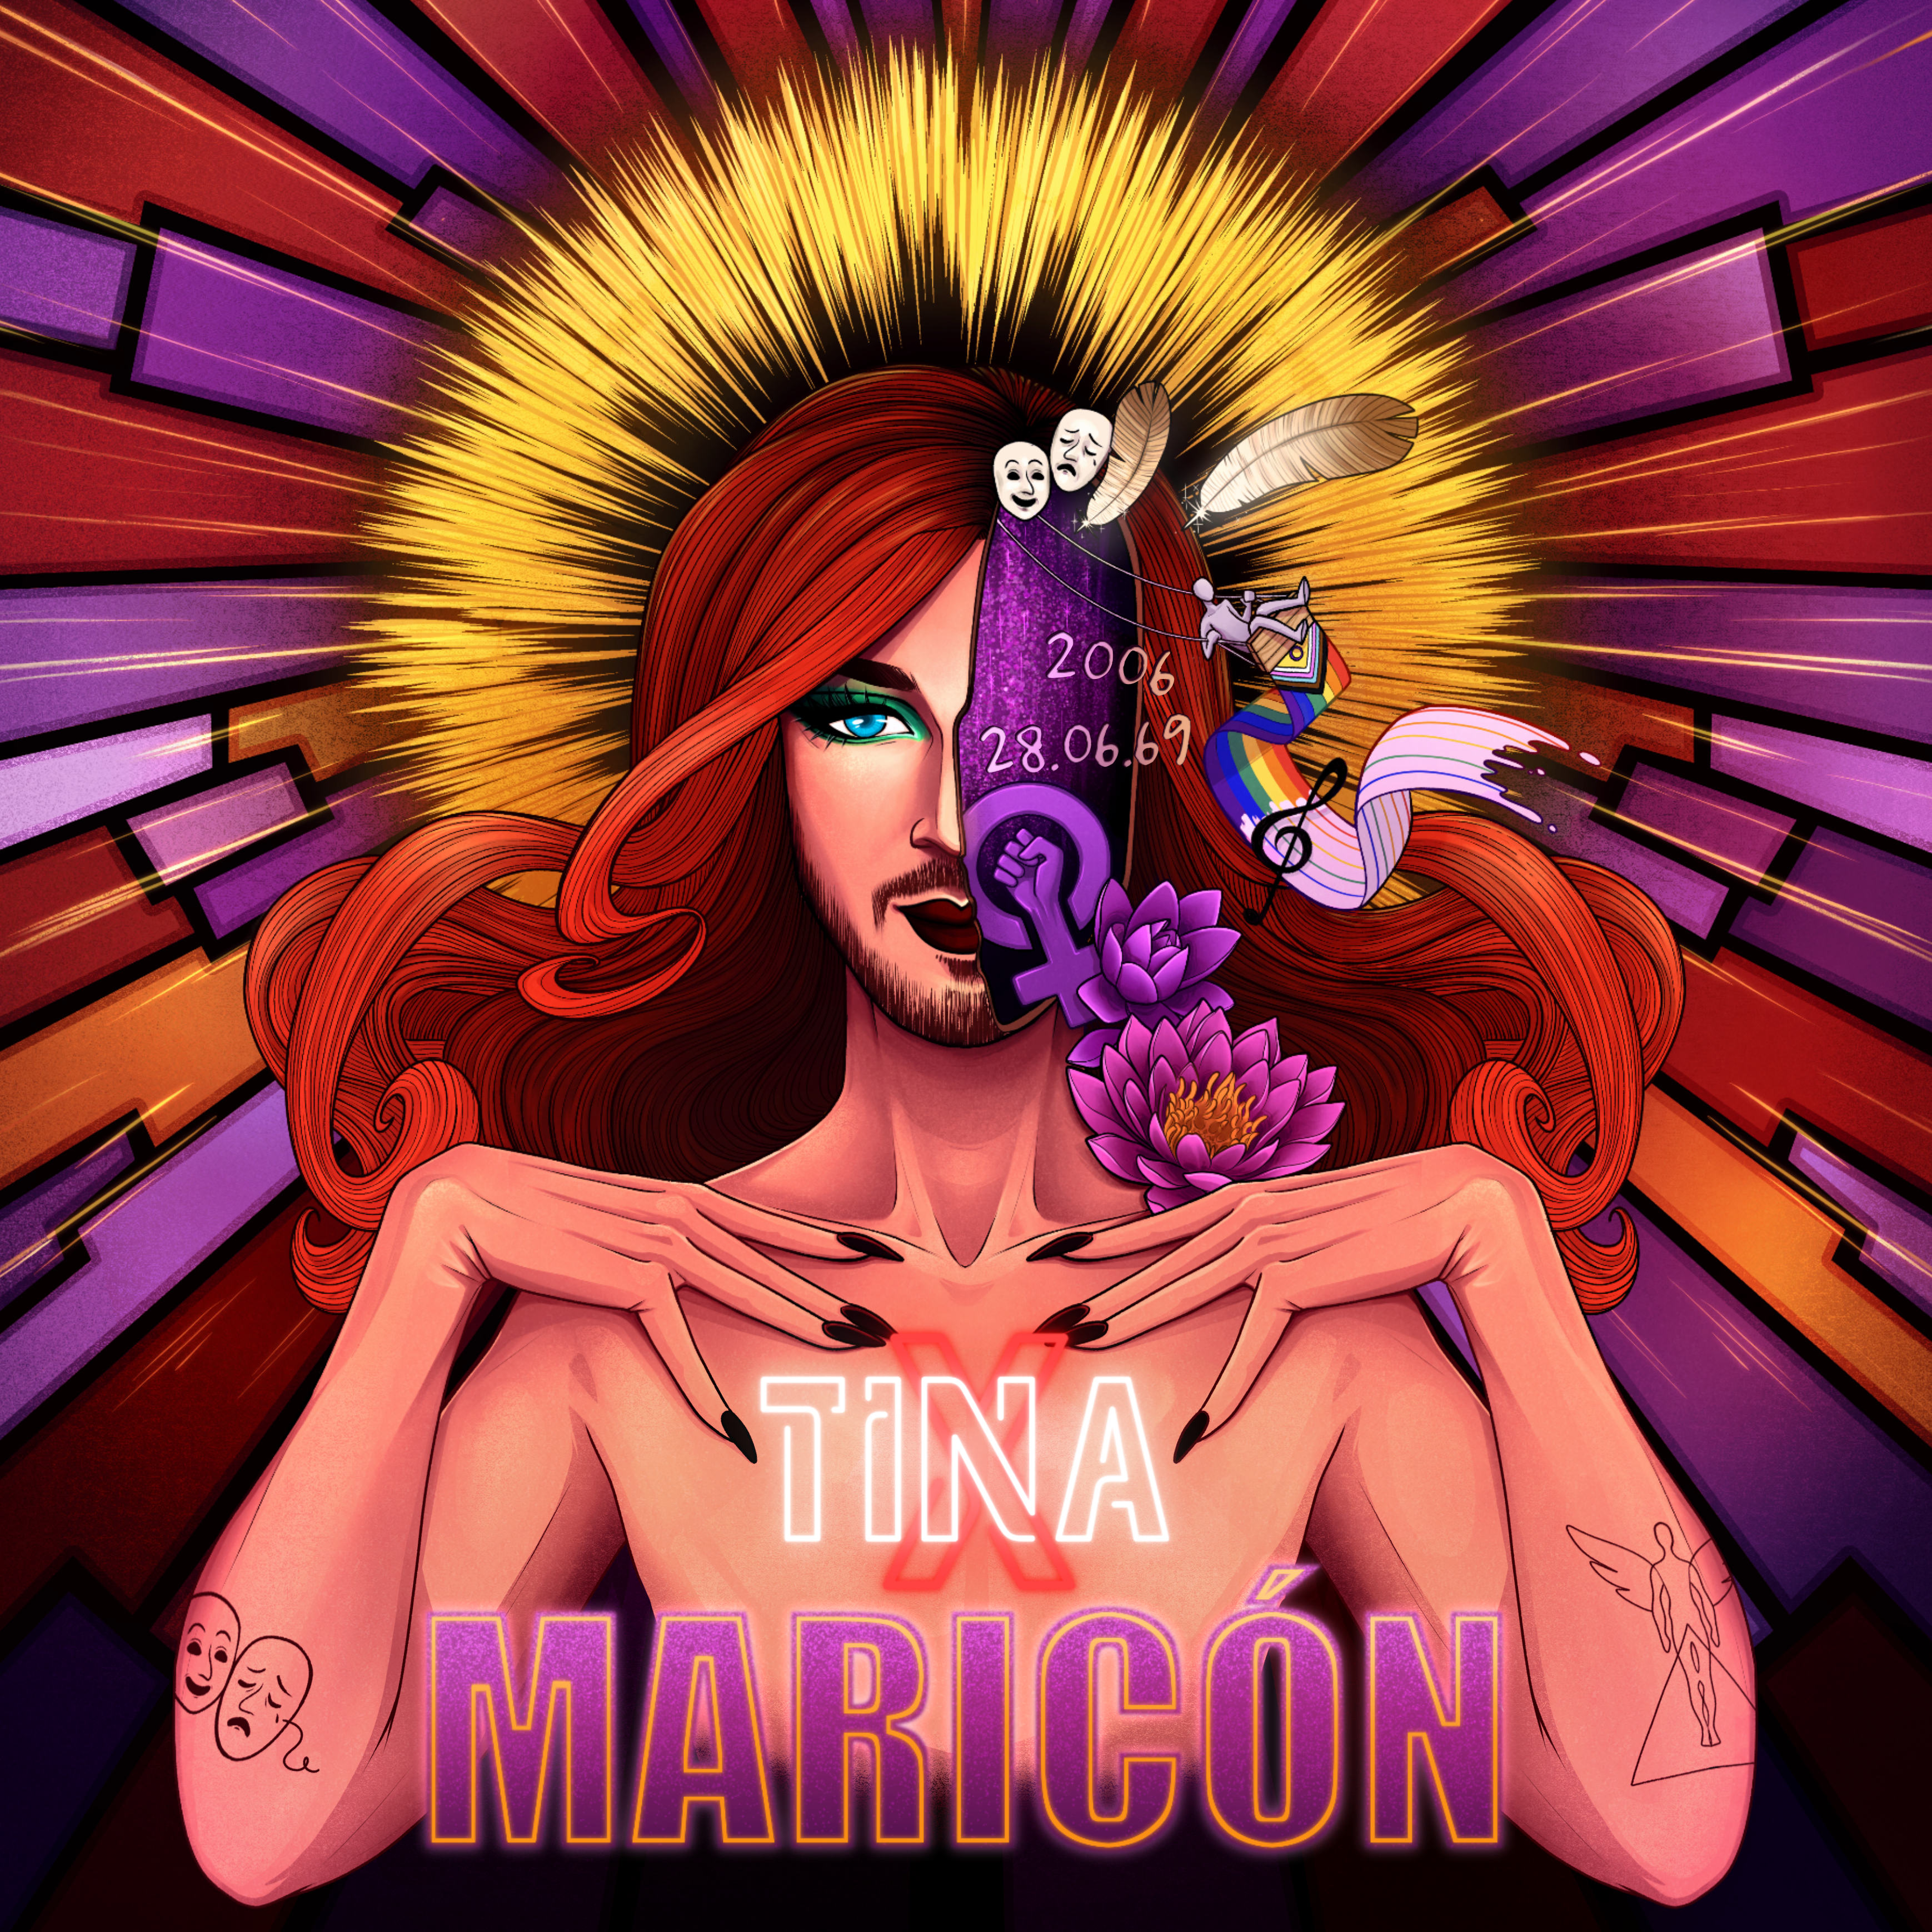 Tina X lanza ‘Maricón’: “He convertido el insulto del instituto en una cicatriz bella”